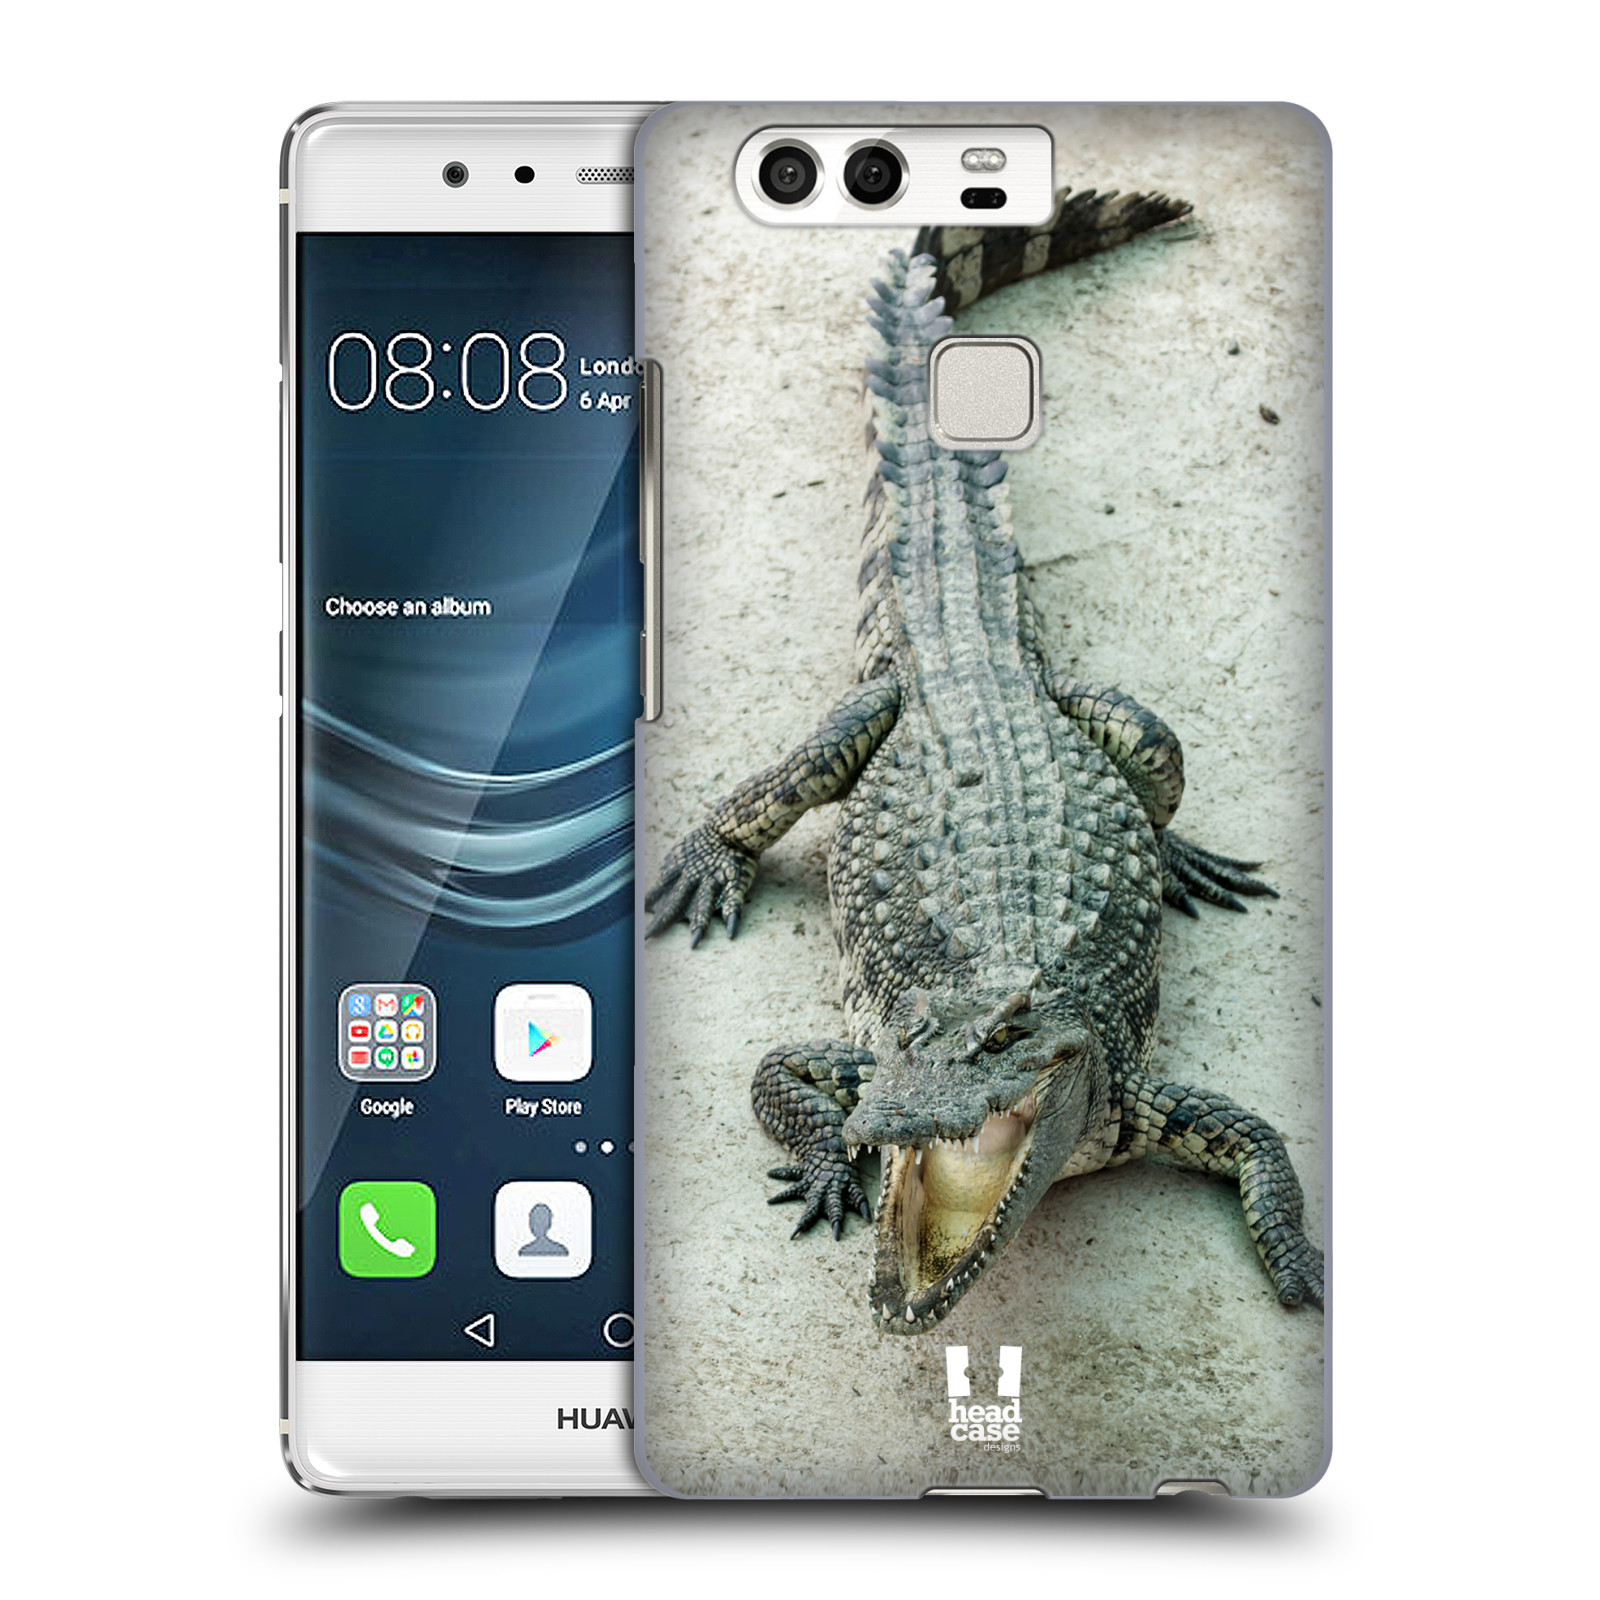 HEAD CASE plastový obal na mobil Huawei P9 / P9 DUAL SIM vzor Divočina, Divoký život a zvířata foto KROKODÝL, KAJMAN